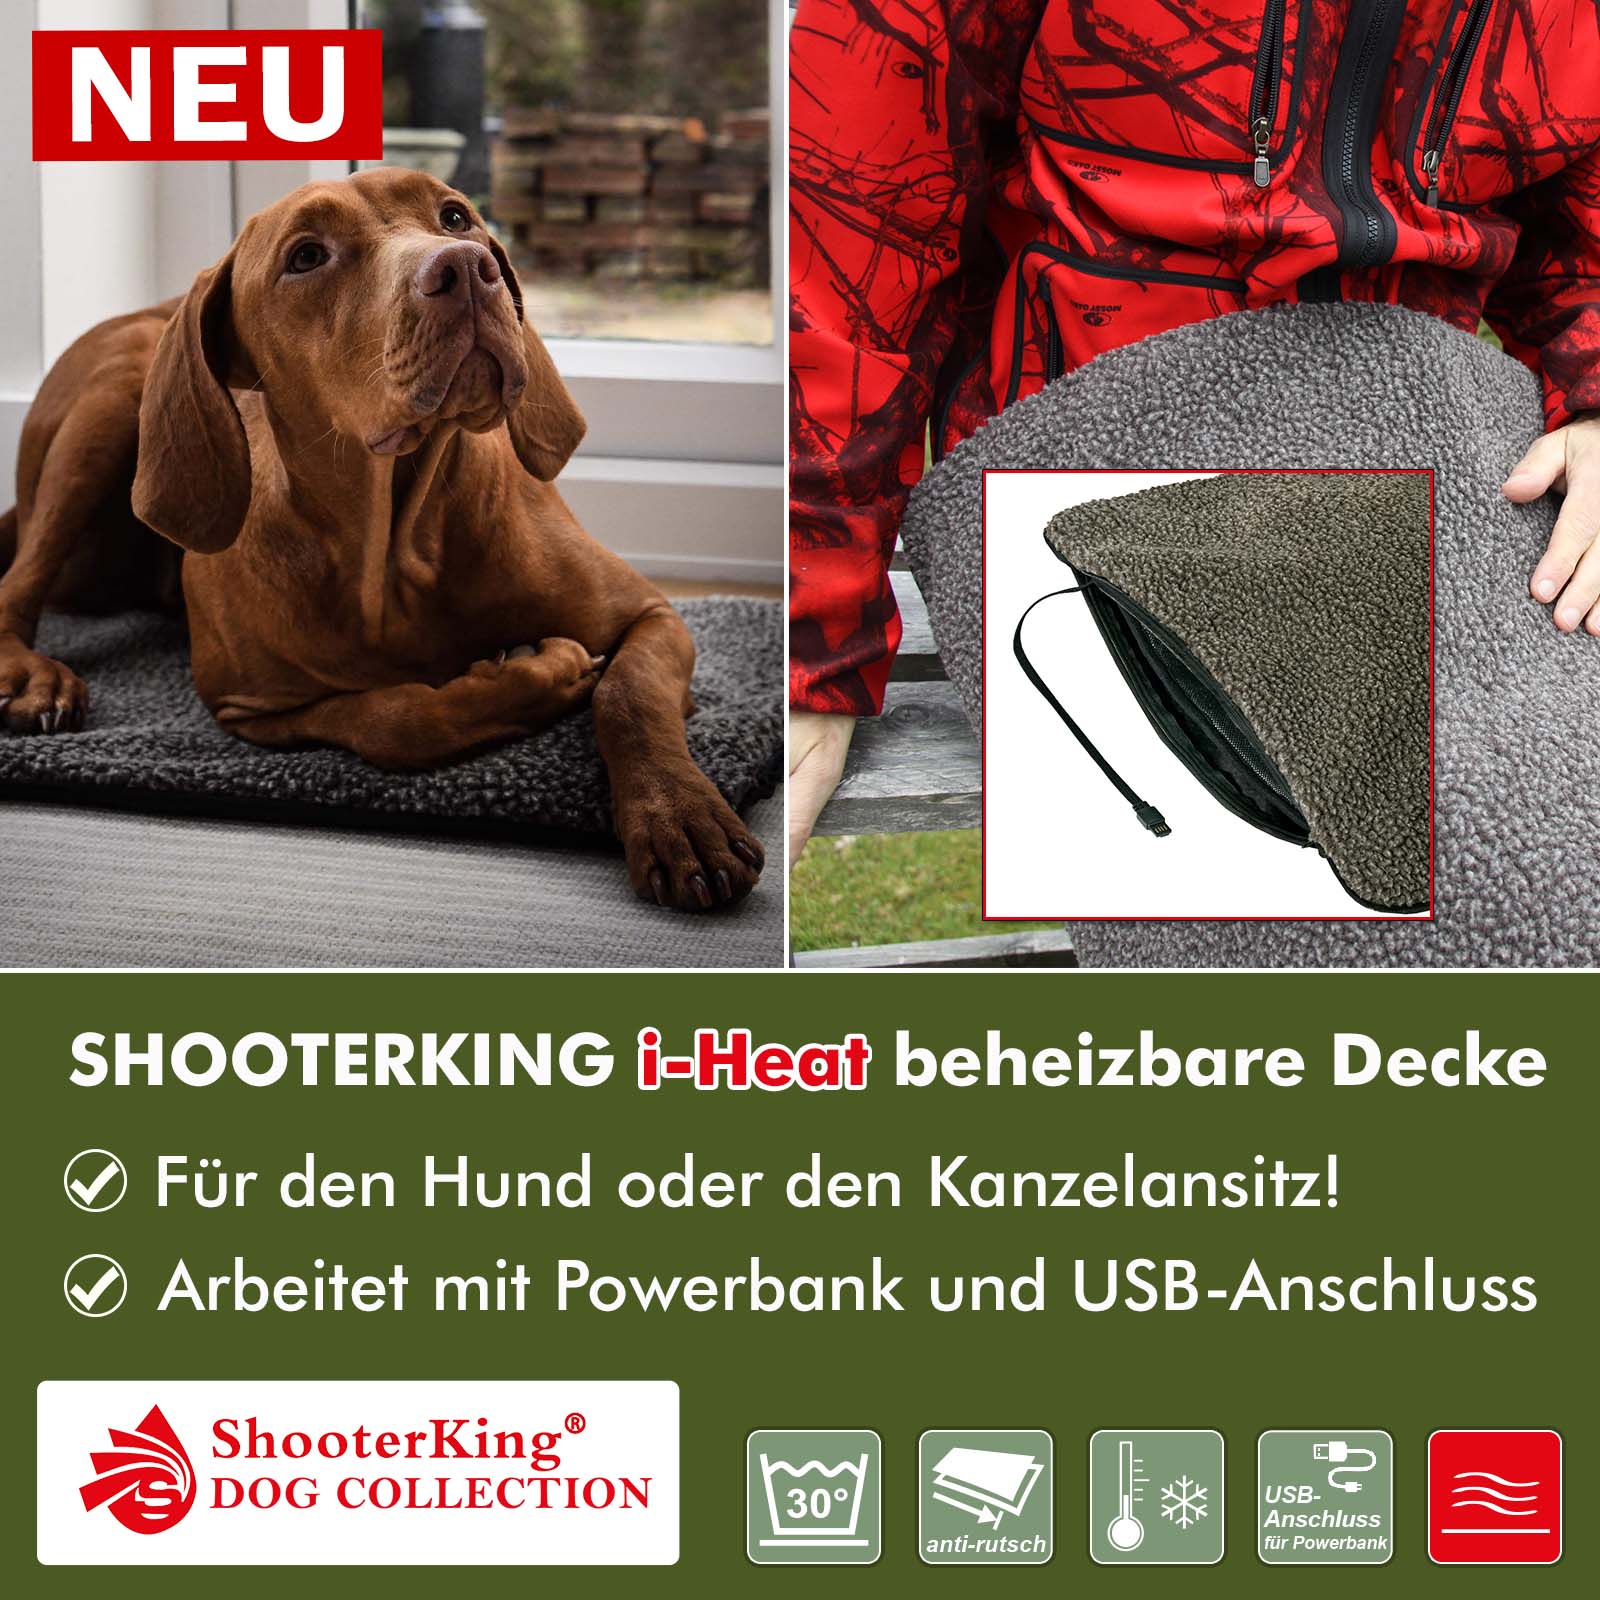 NEU: SHOOTERKING i-Heat beheizbare Decke - AKAH - Albrecht Kind GmbH